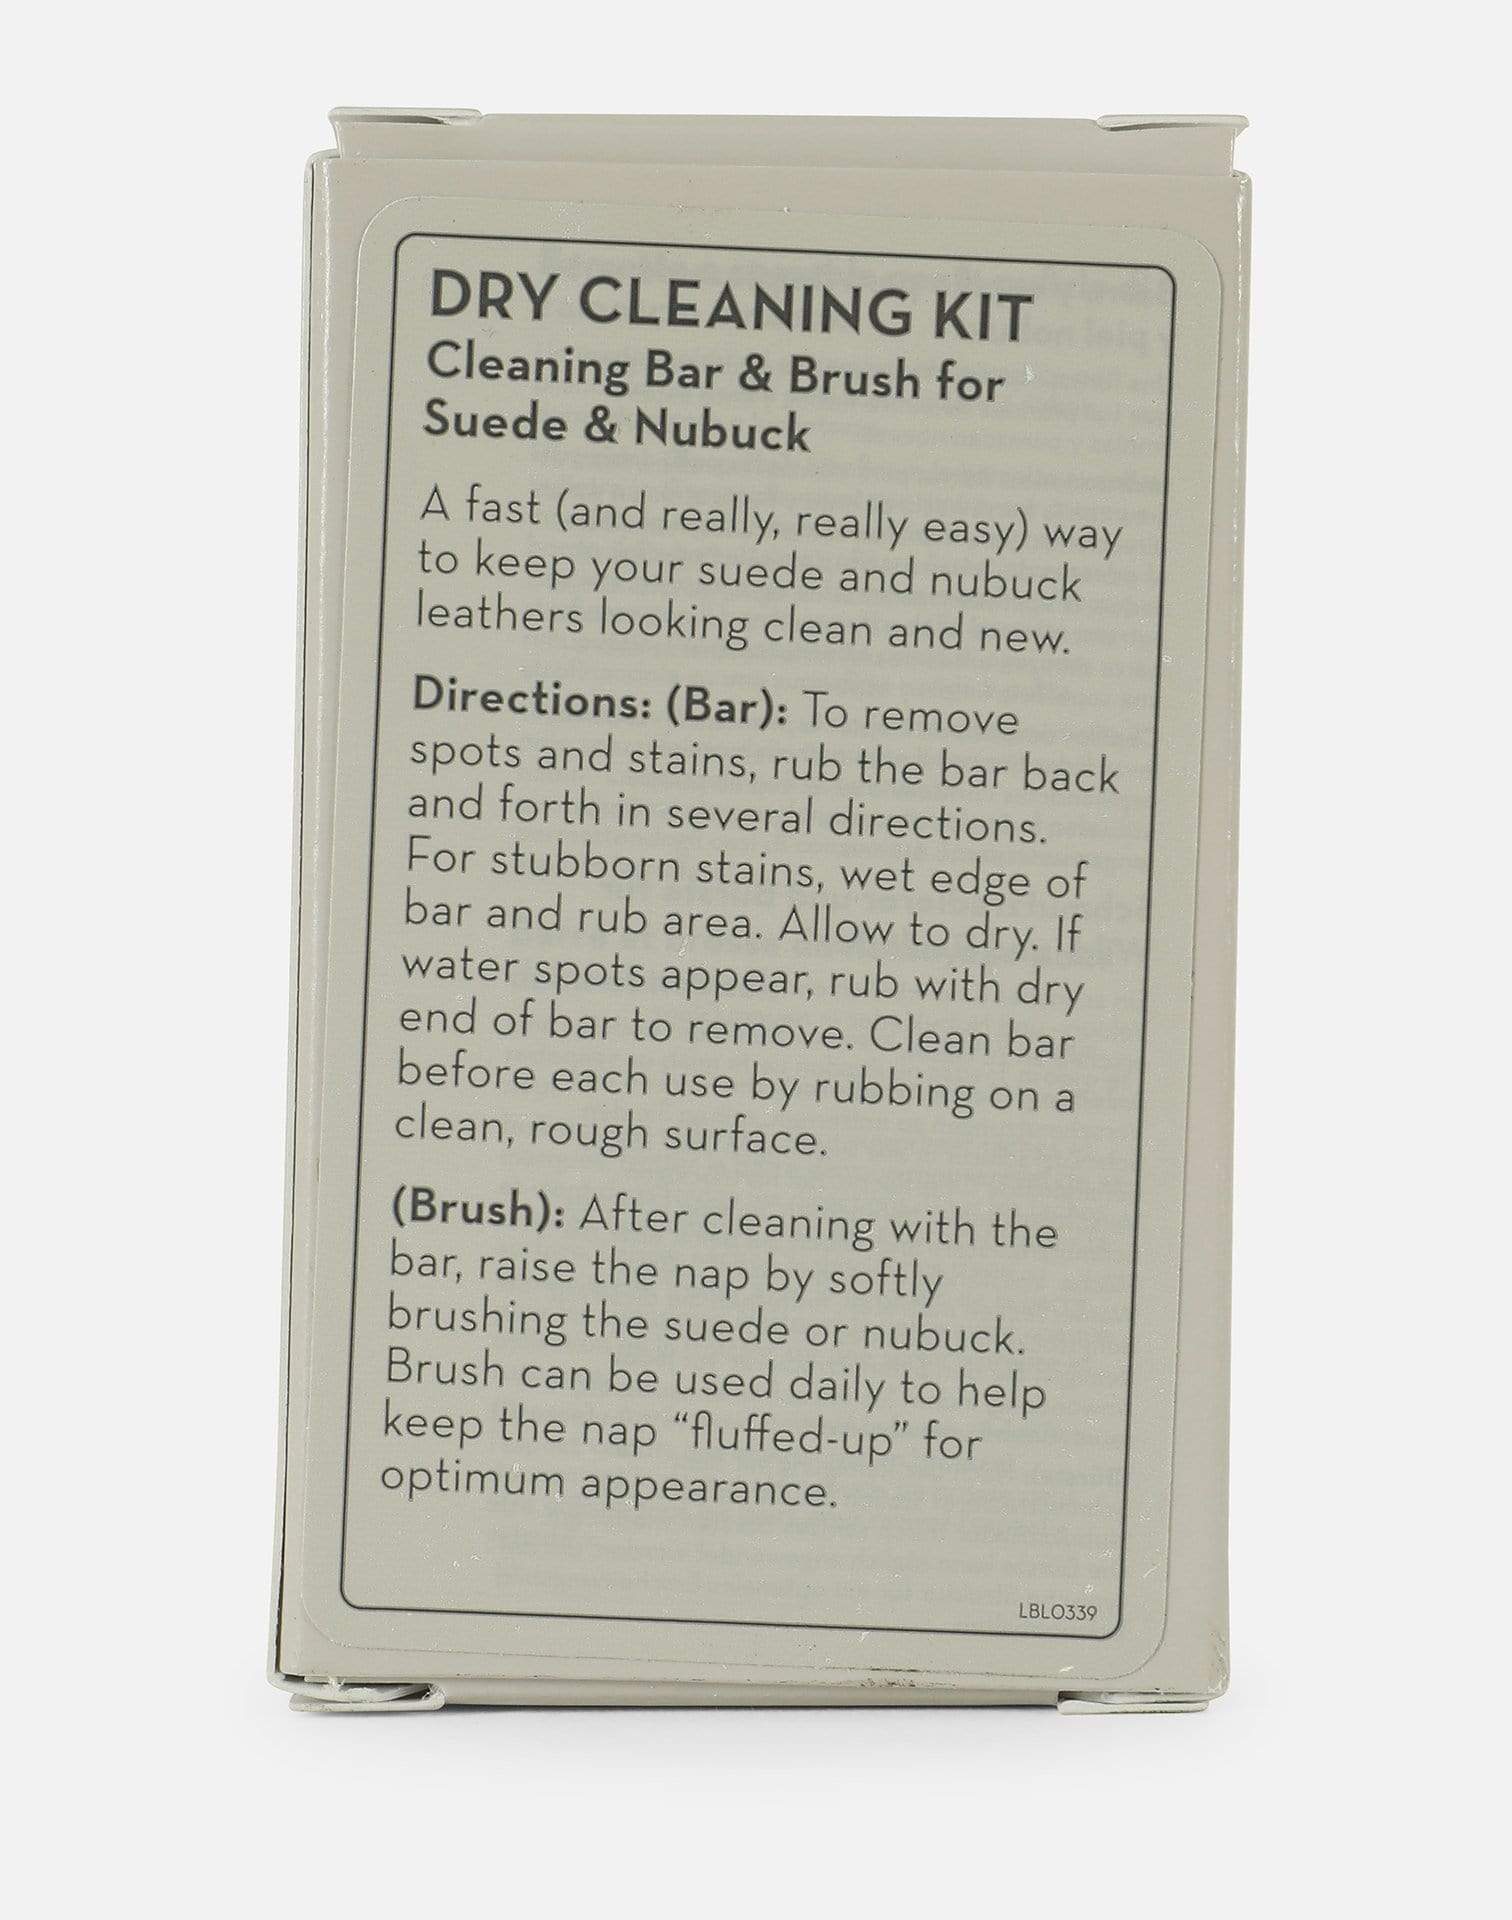 hoofdstad Aannemelijk Dislocatie Timberland Dry Cleaning Kit – DTLR